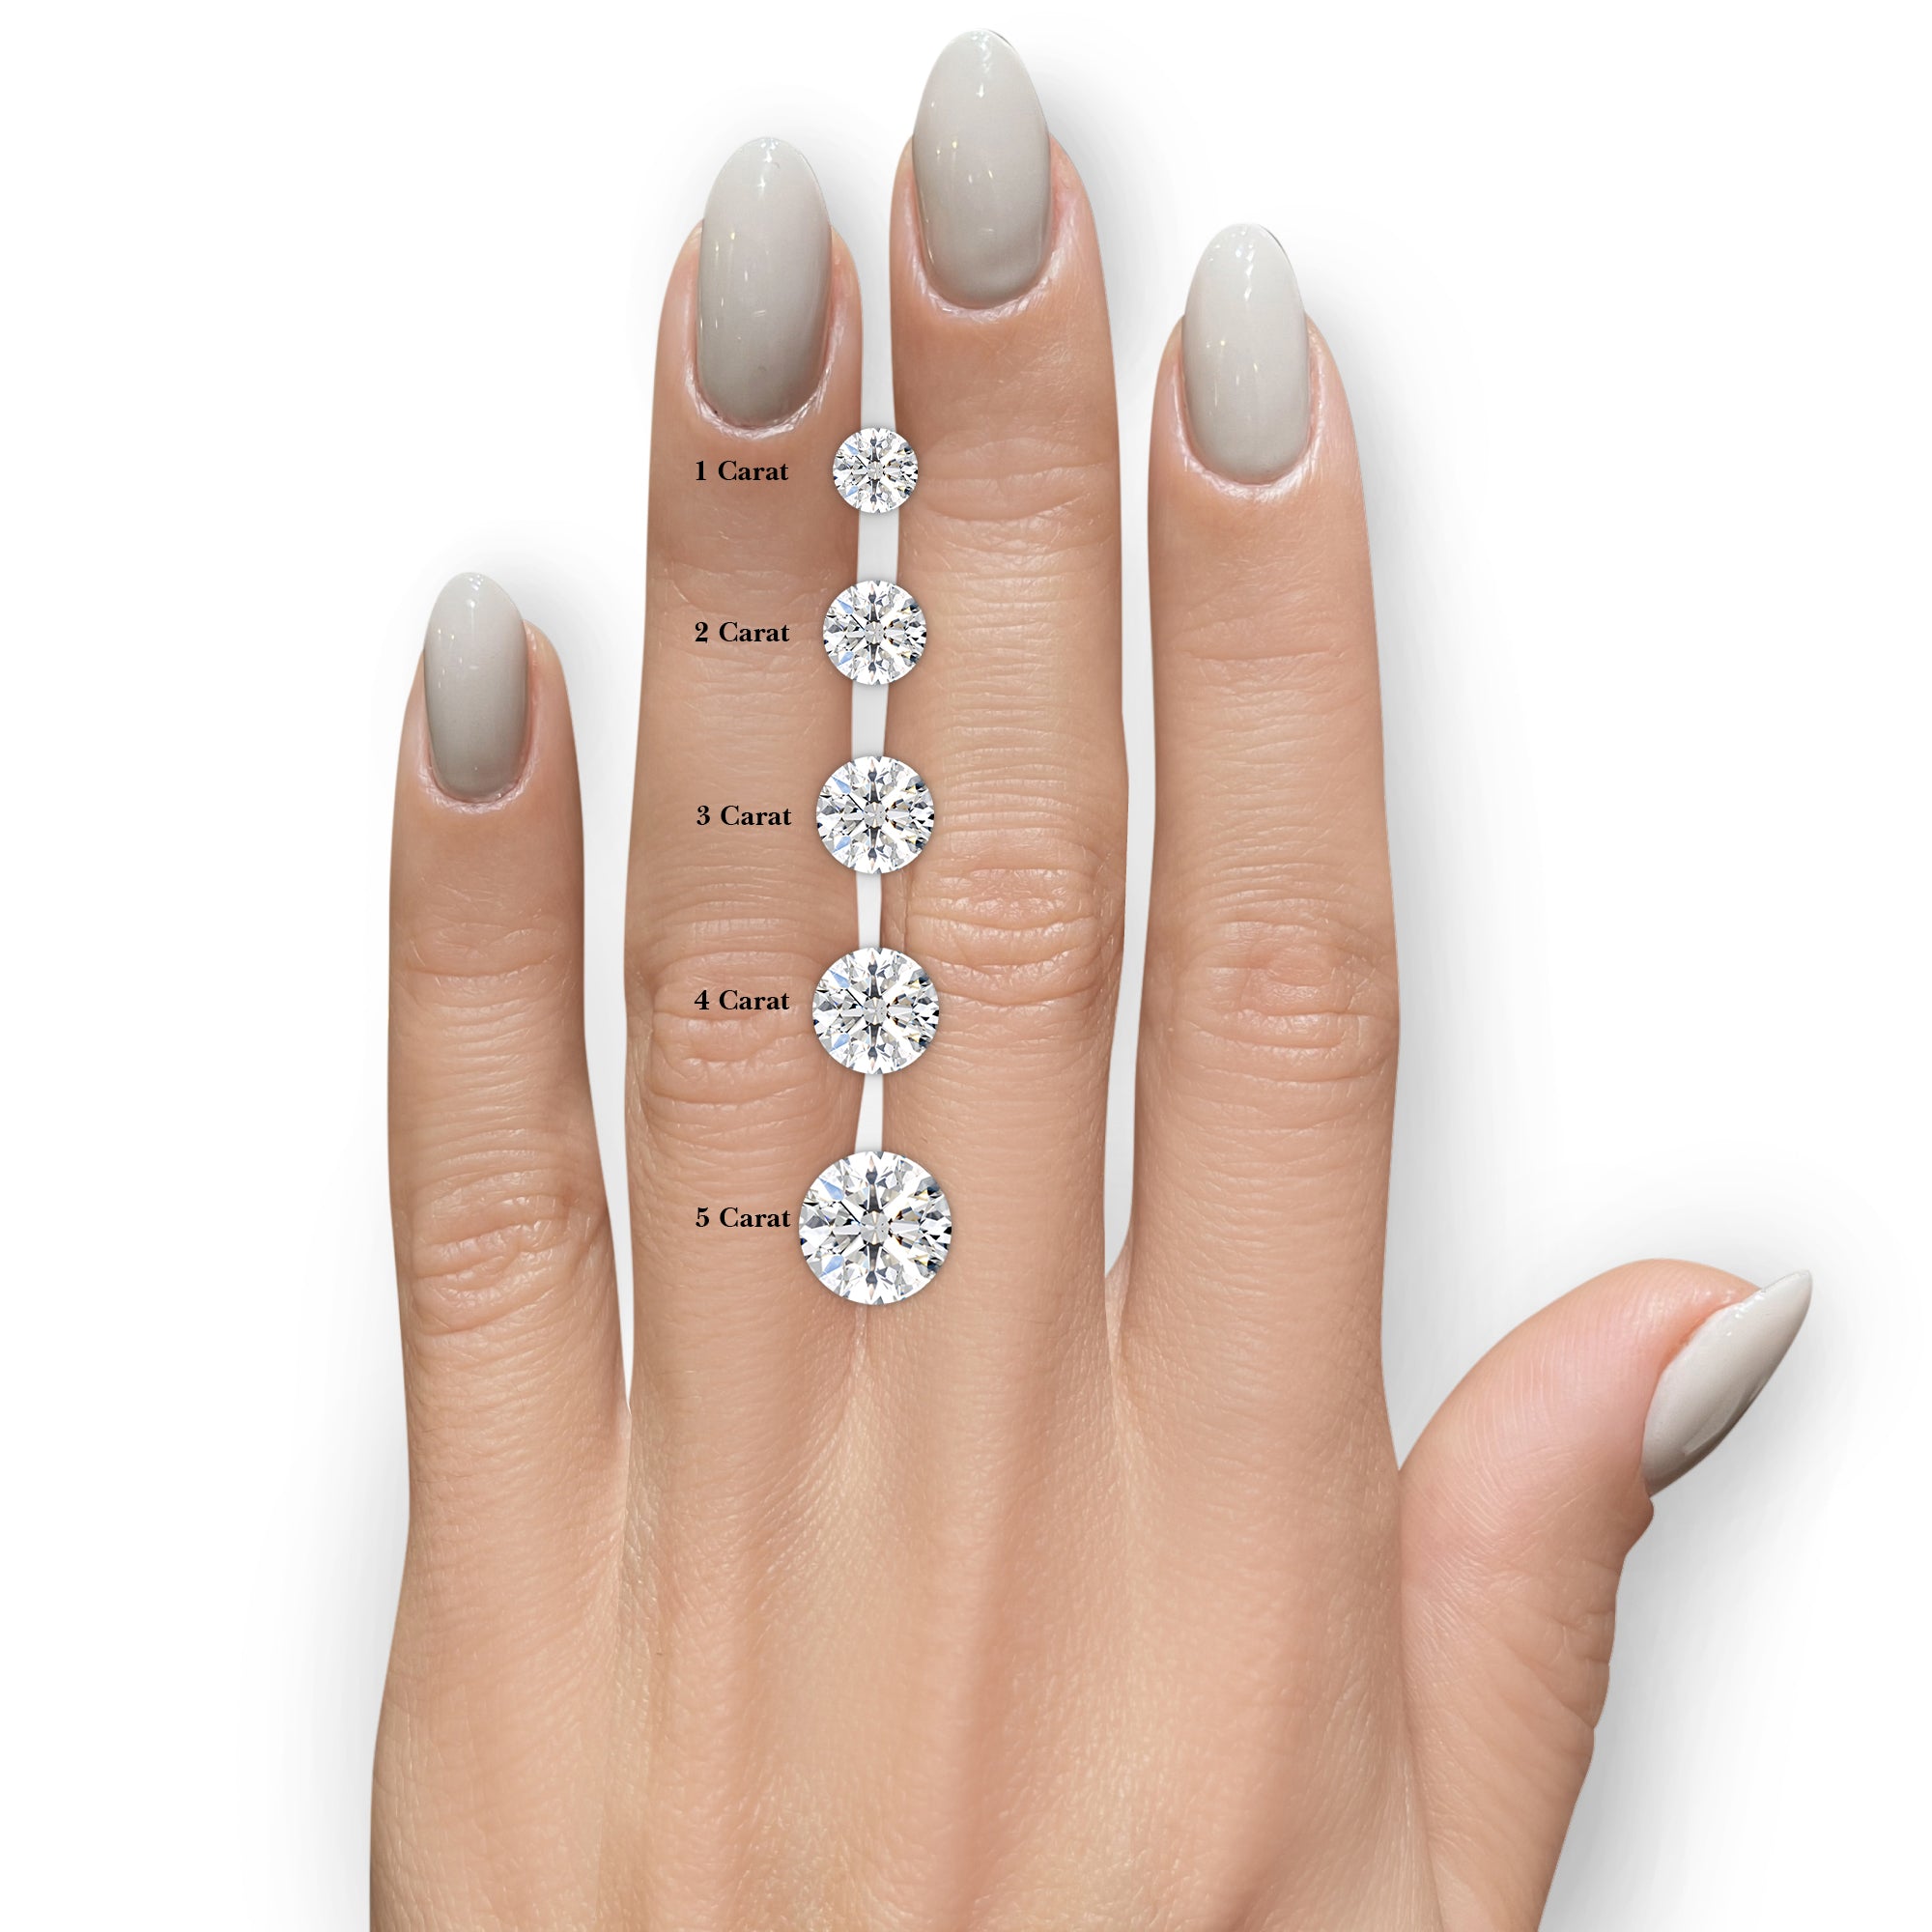 Snowflake Diamond Engagement Ring -14K Rose Gold